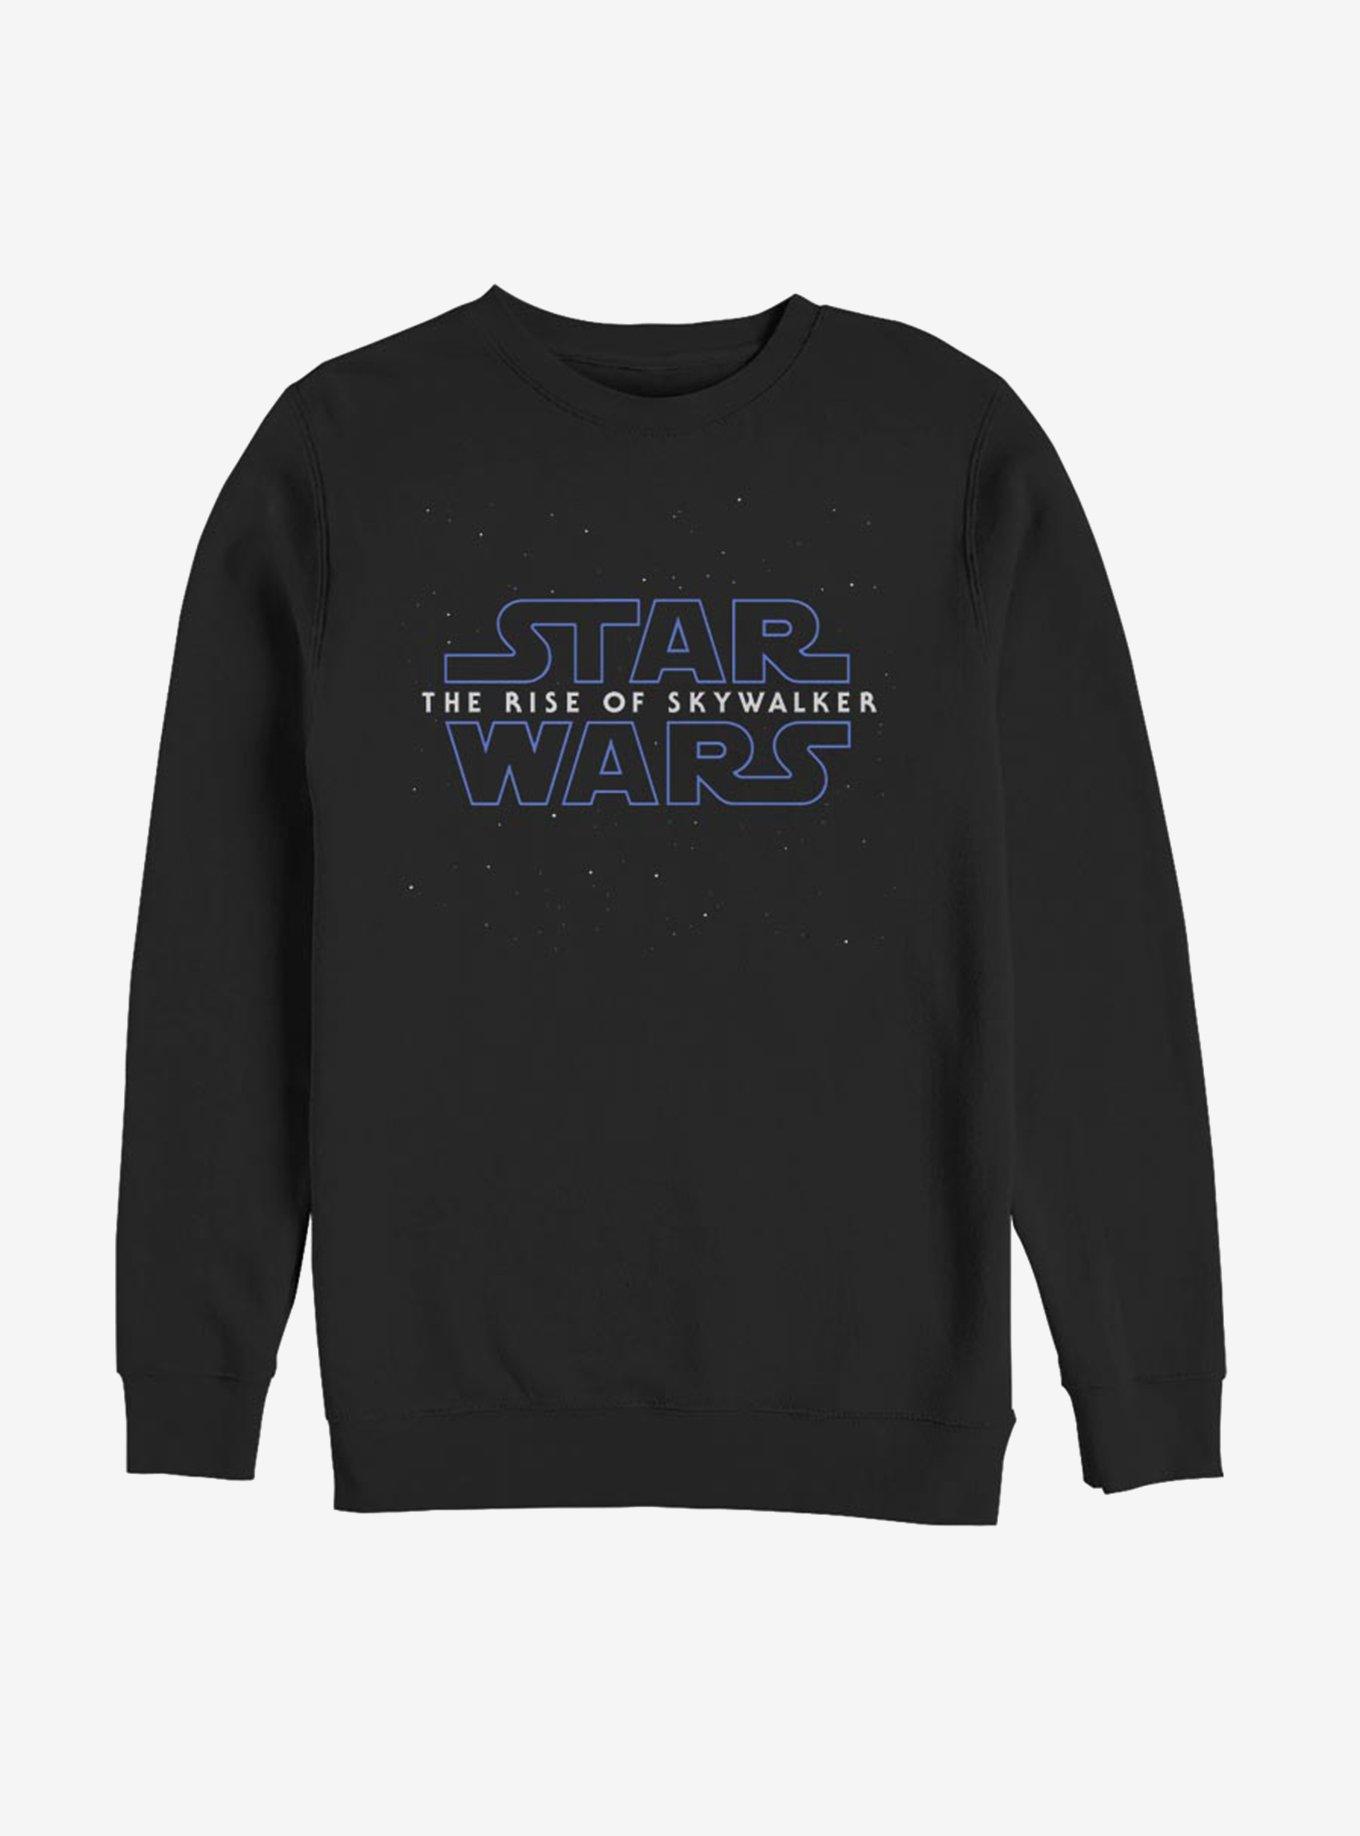 Star Wars: The Rise of Skywalker Stars Sweatshirt, BLACK, hi-res